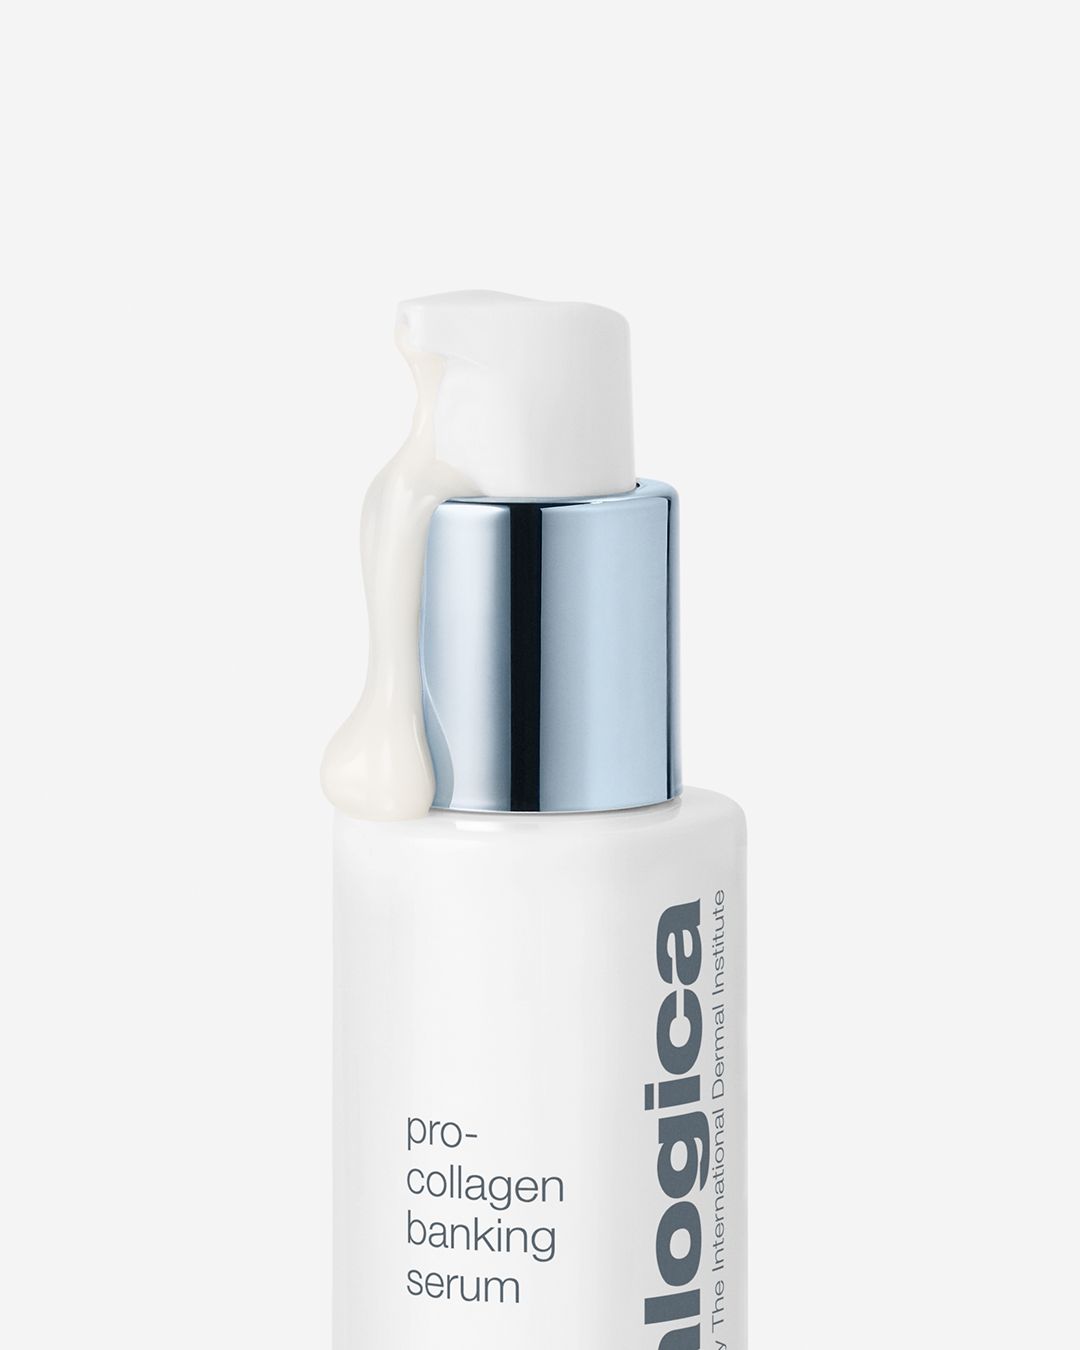 pro collagen banking serum